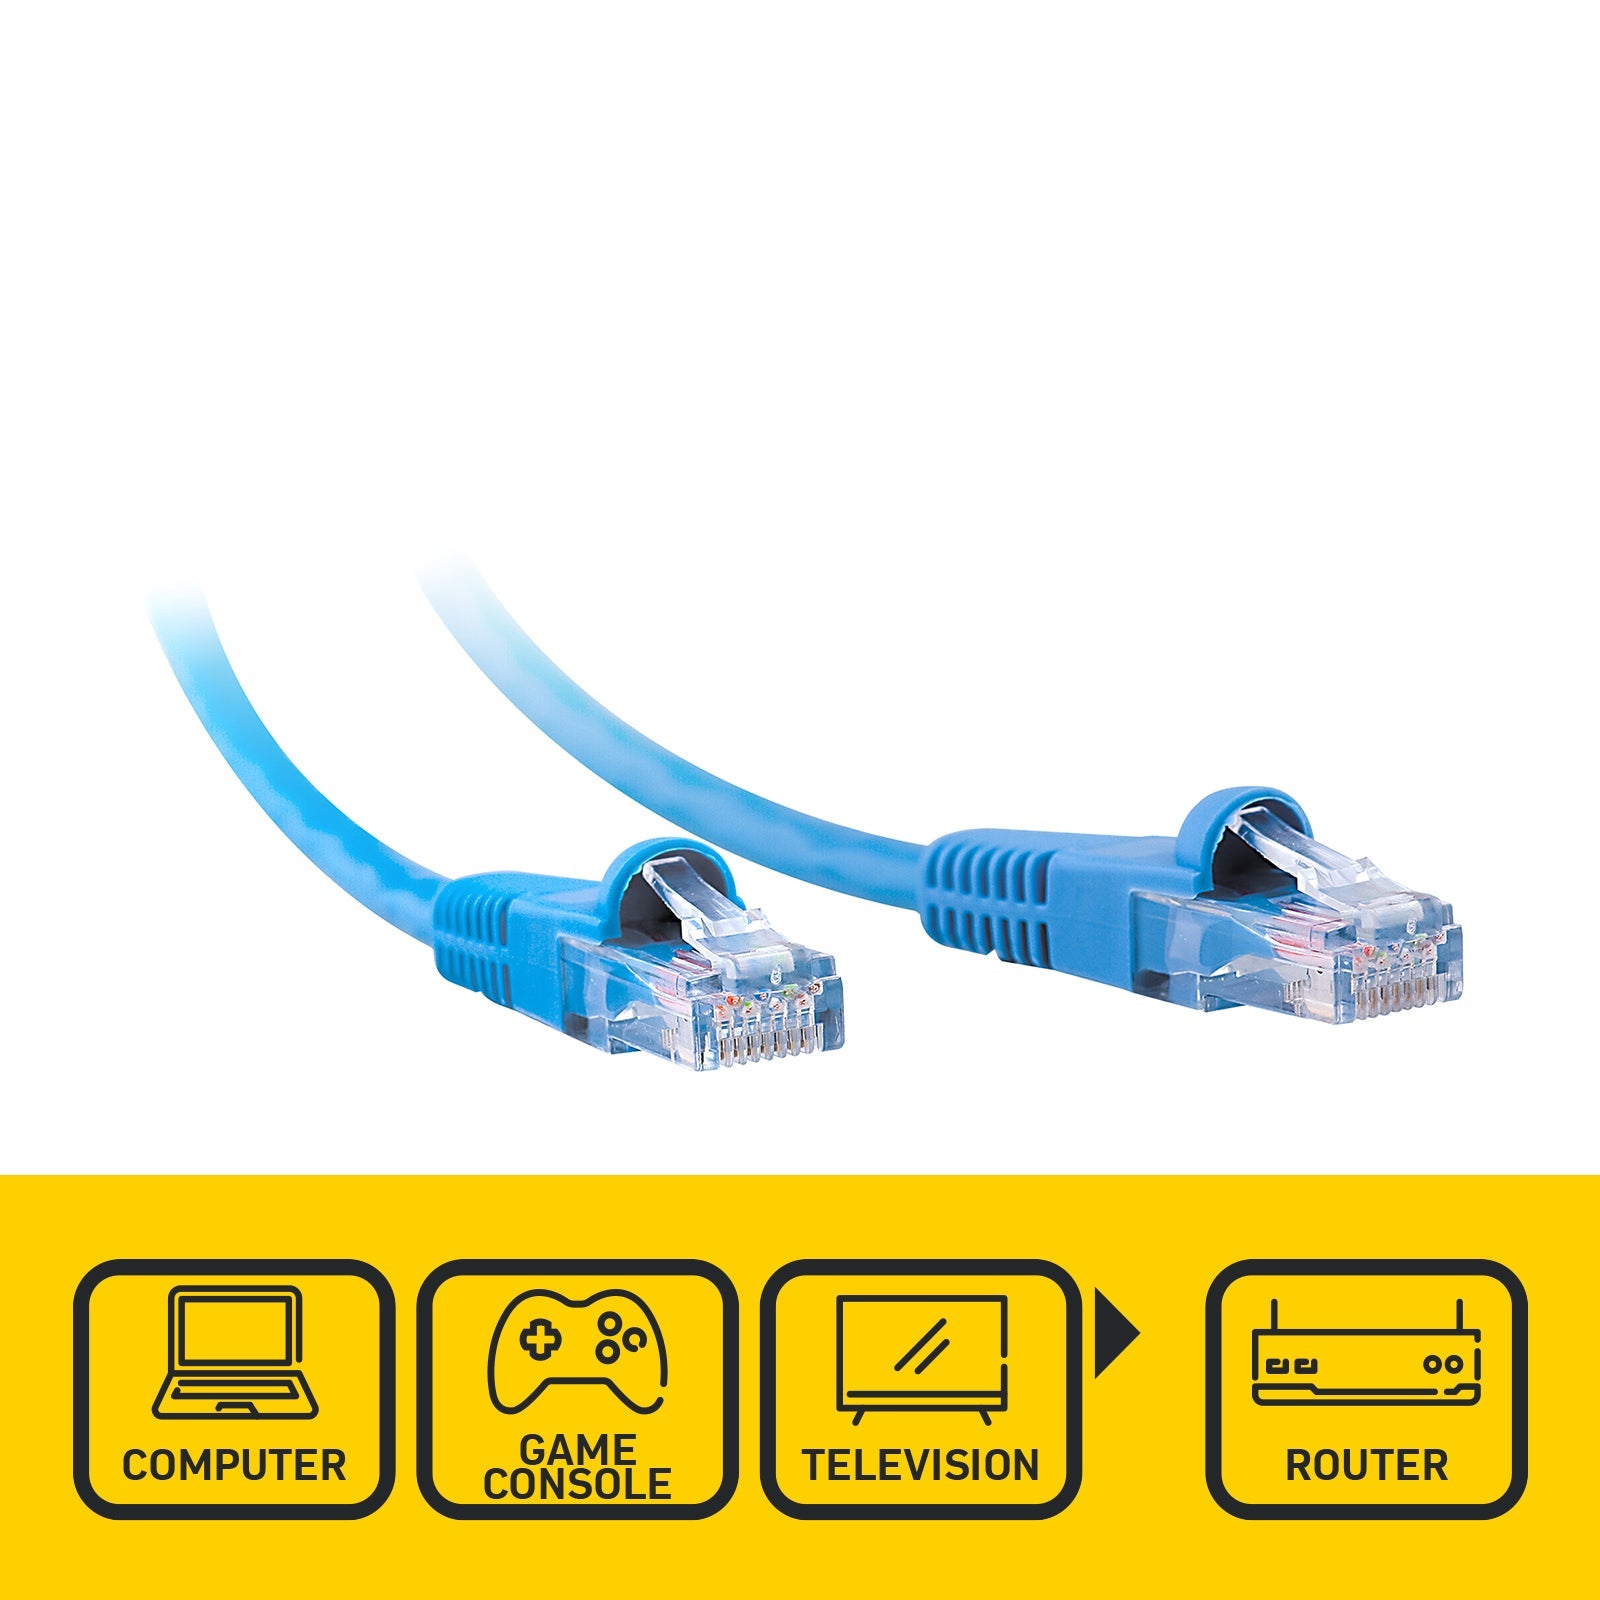 Lan cat5e rj45 ethernet net cable 30m, CATEGORIES \ Electronics \ Network  accessories